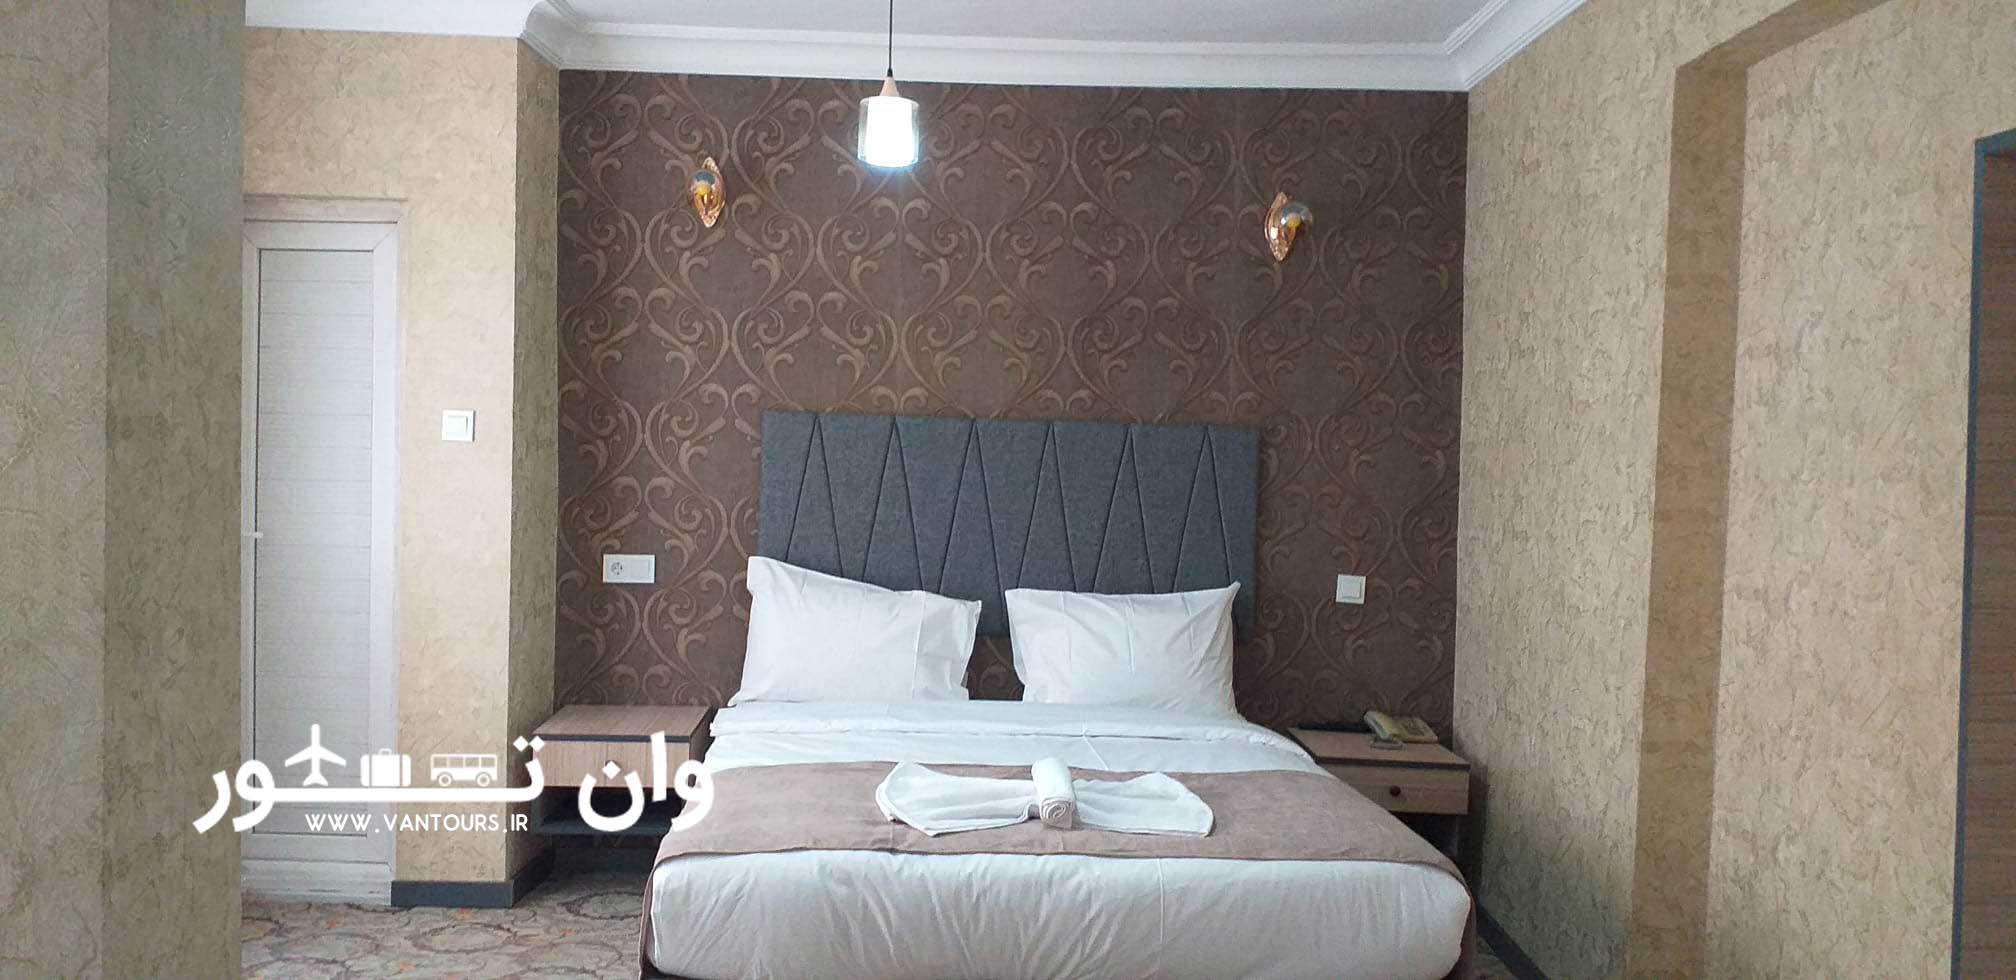 هتل ایلوان در وان ترکیه – Ilvan Hotel